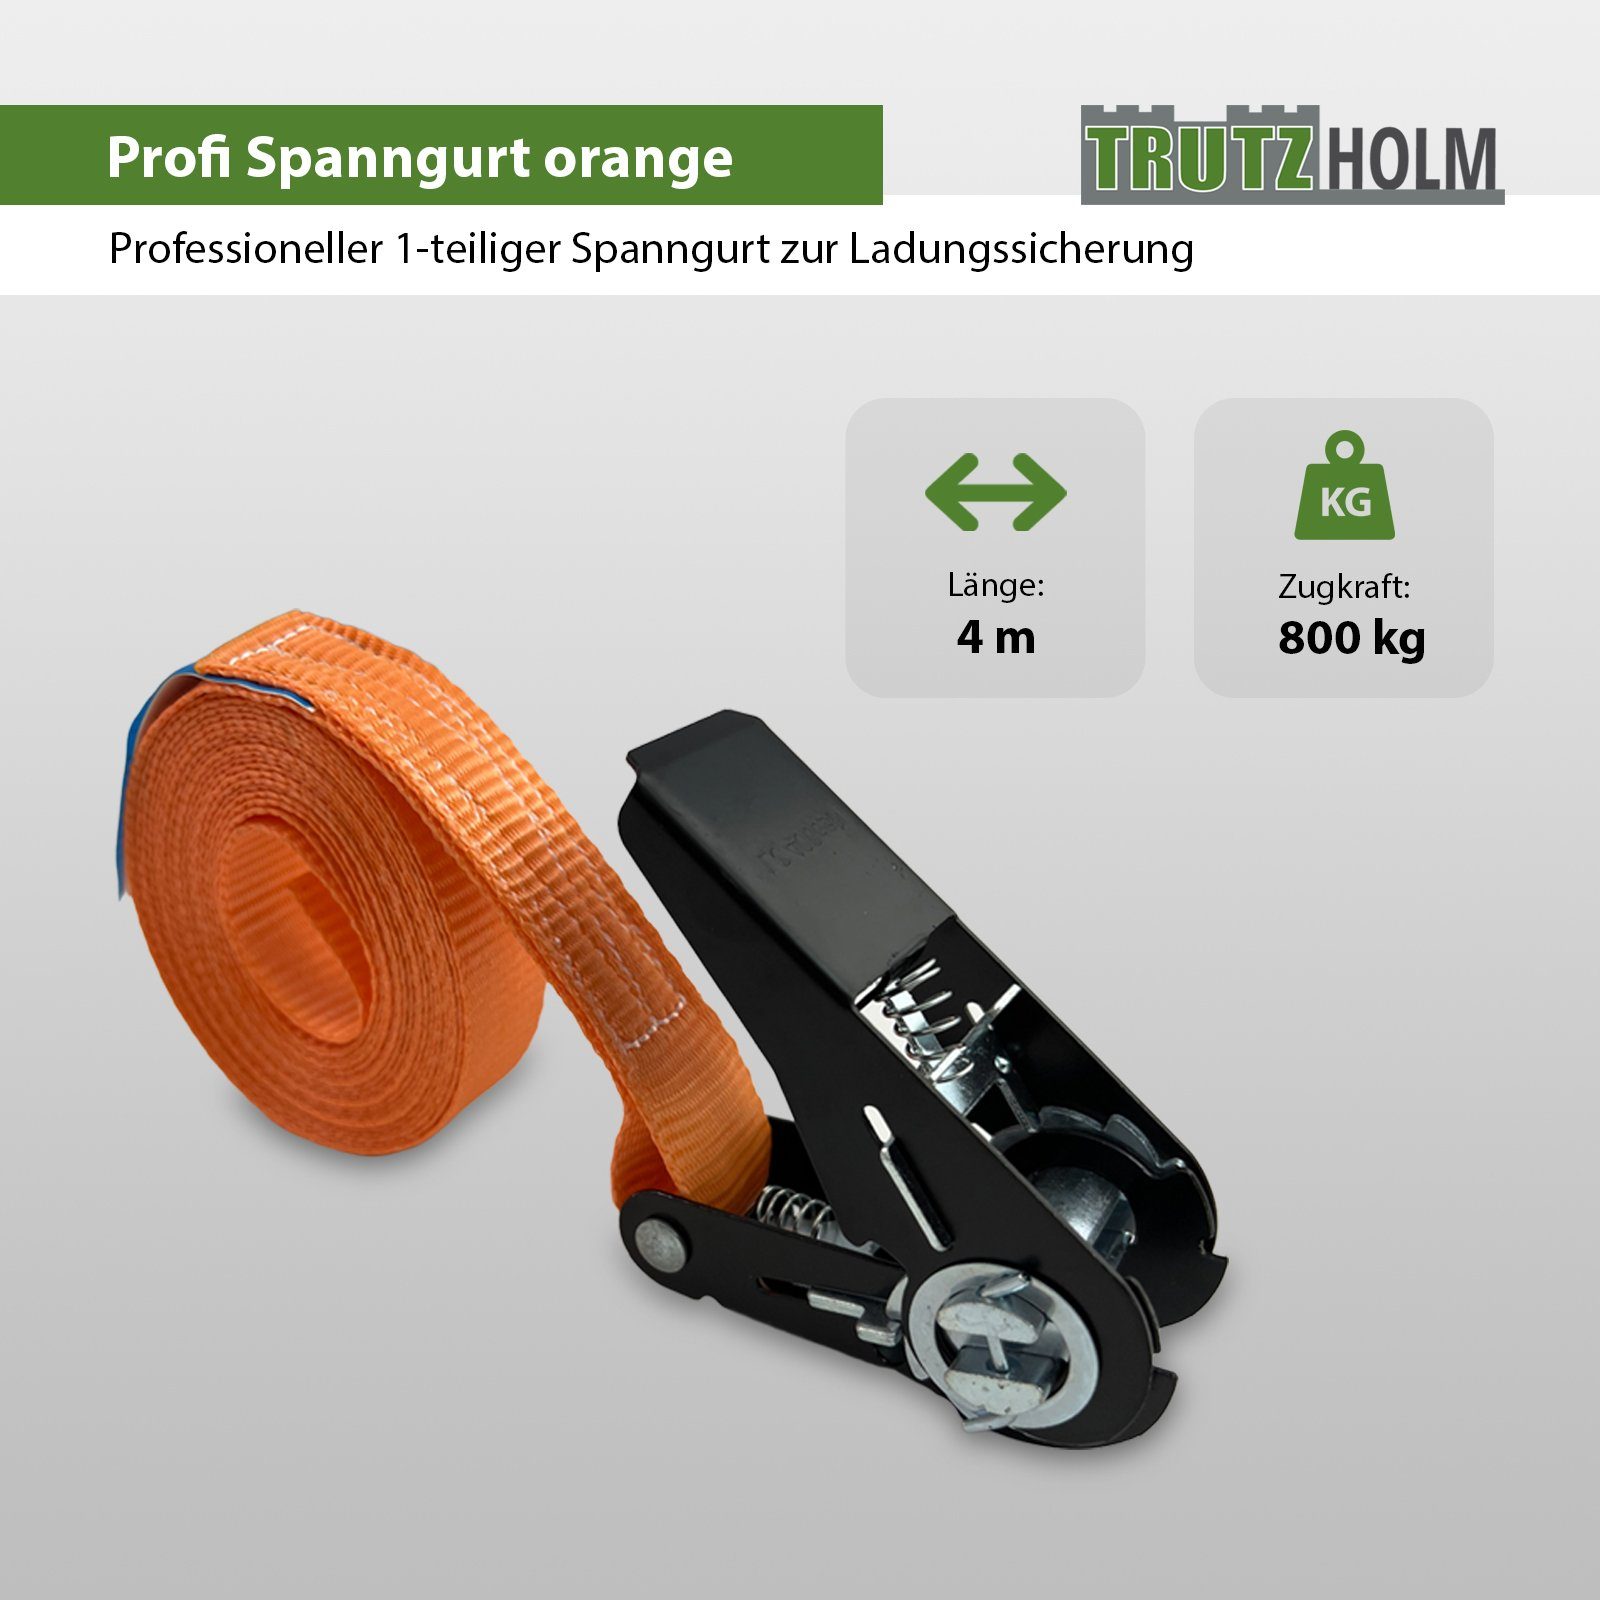 1-tlg Ratschen TRUTZHOLM Spanngurt Orange Schwarzes Spanngurt 2x 0,8t Spanngurte (Set) 800kg 4m